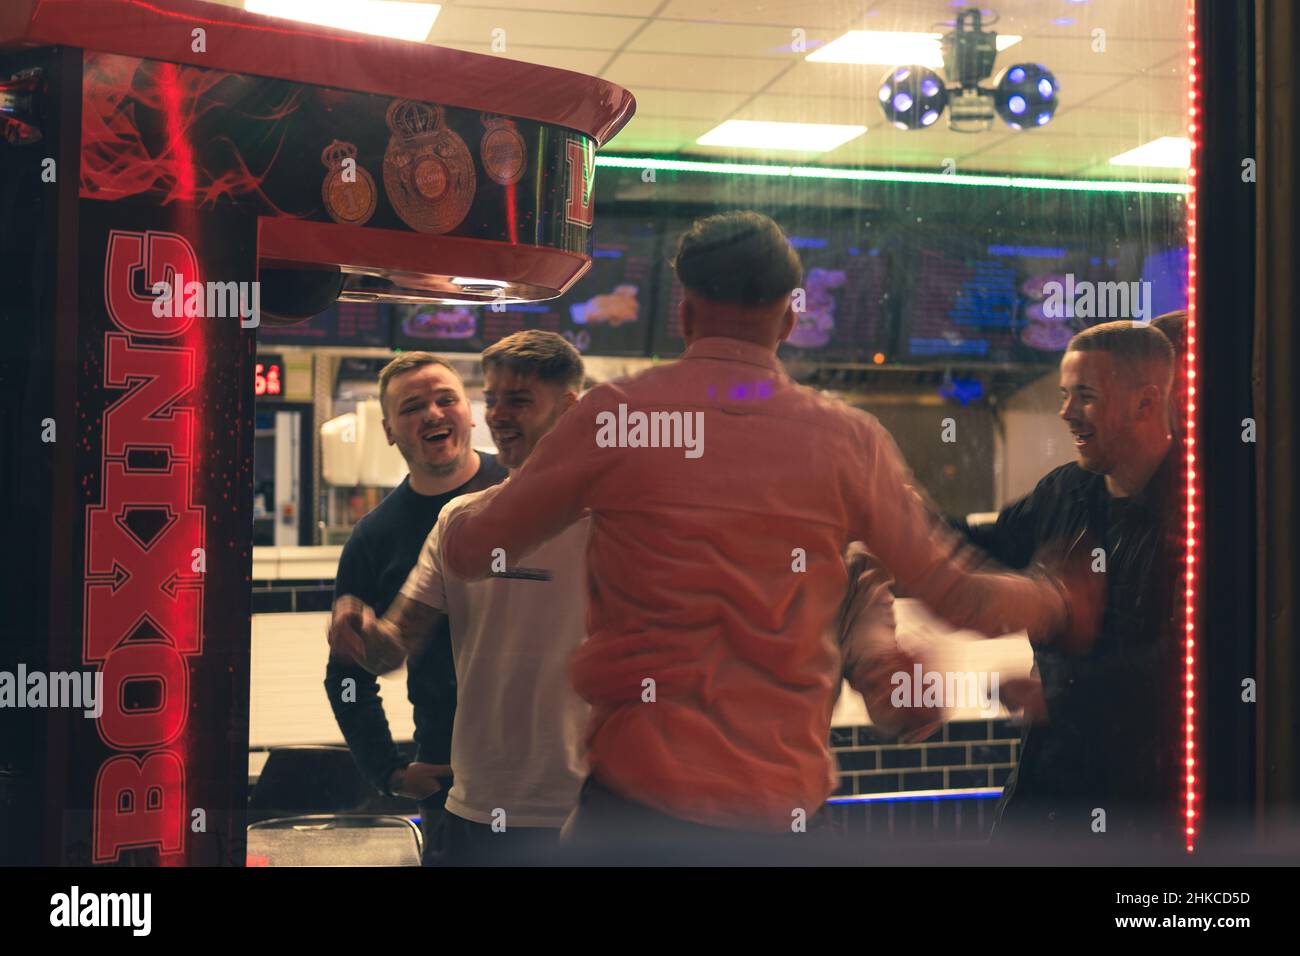 Männer feiern im Rahmen eines Abends in Newcastle upon Tyne, Großbritannien, Erfolge beim Boxspiel zum Mitnehmen. Stockfoto